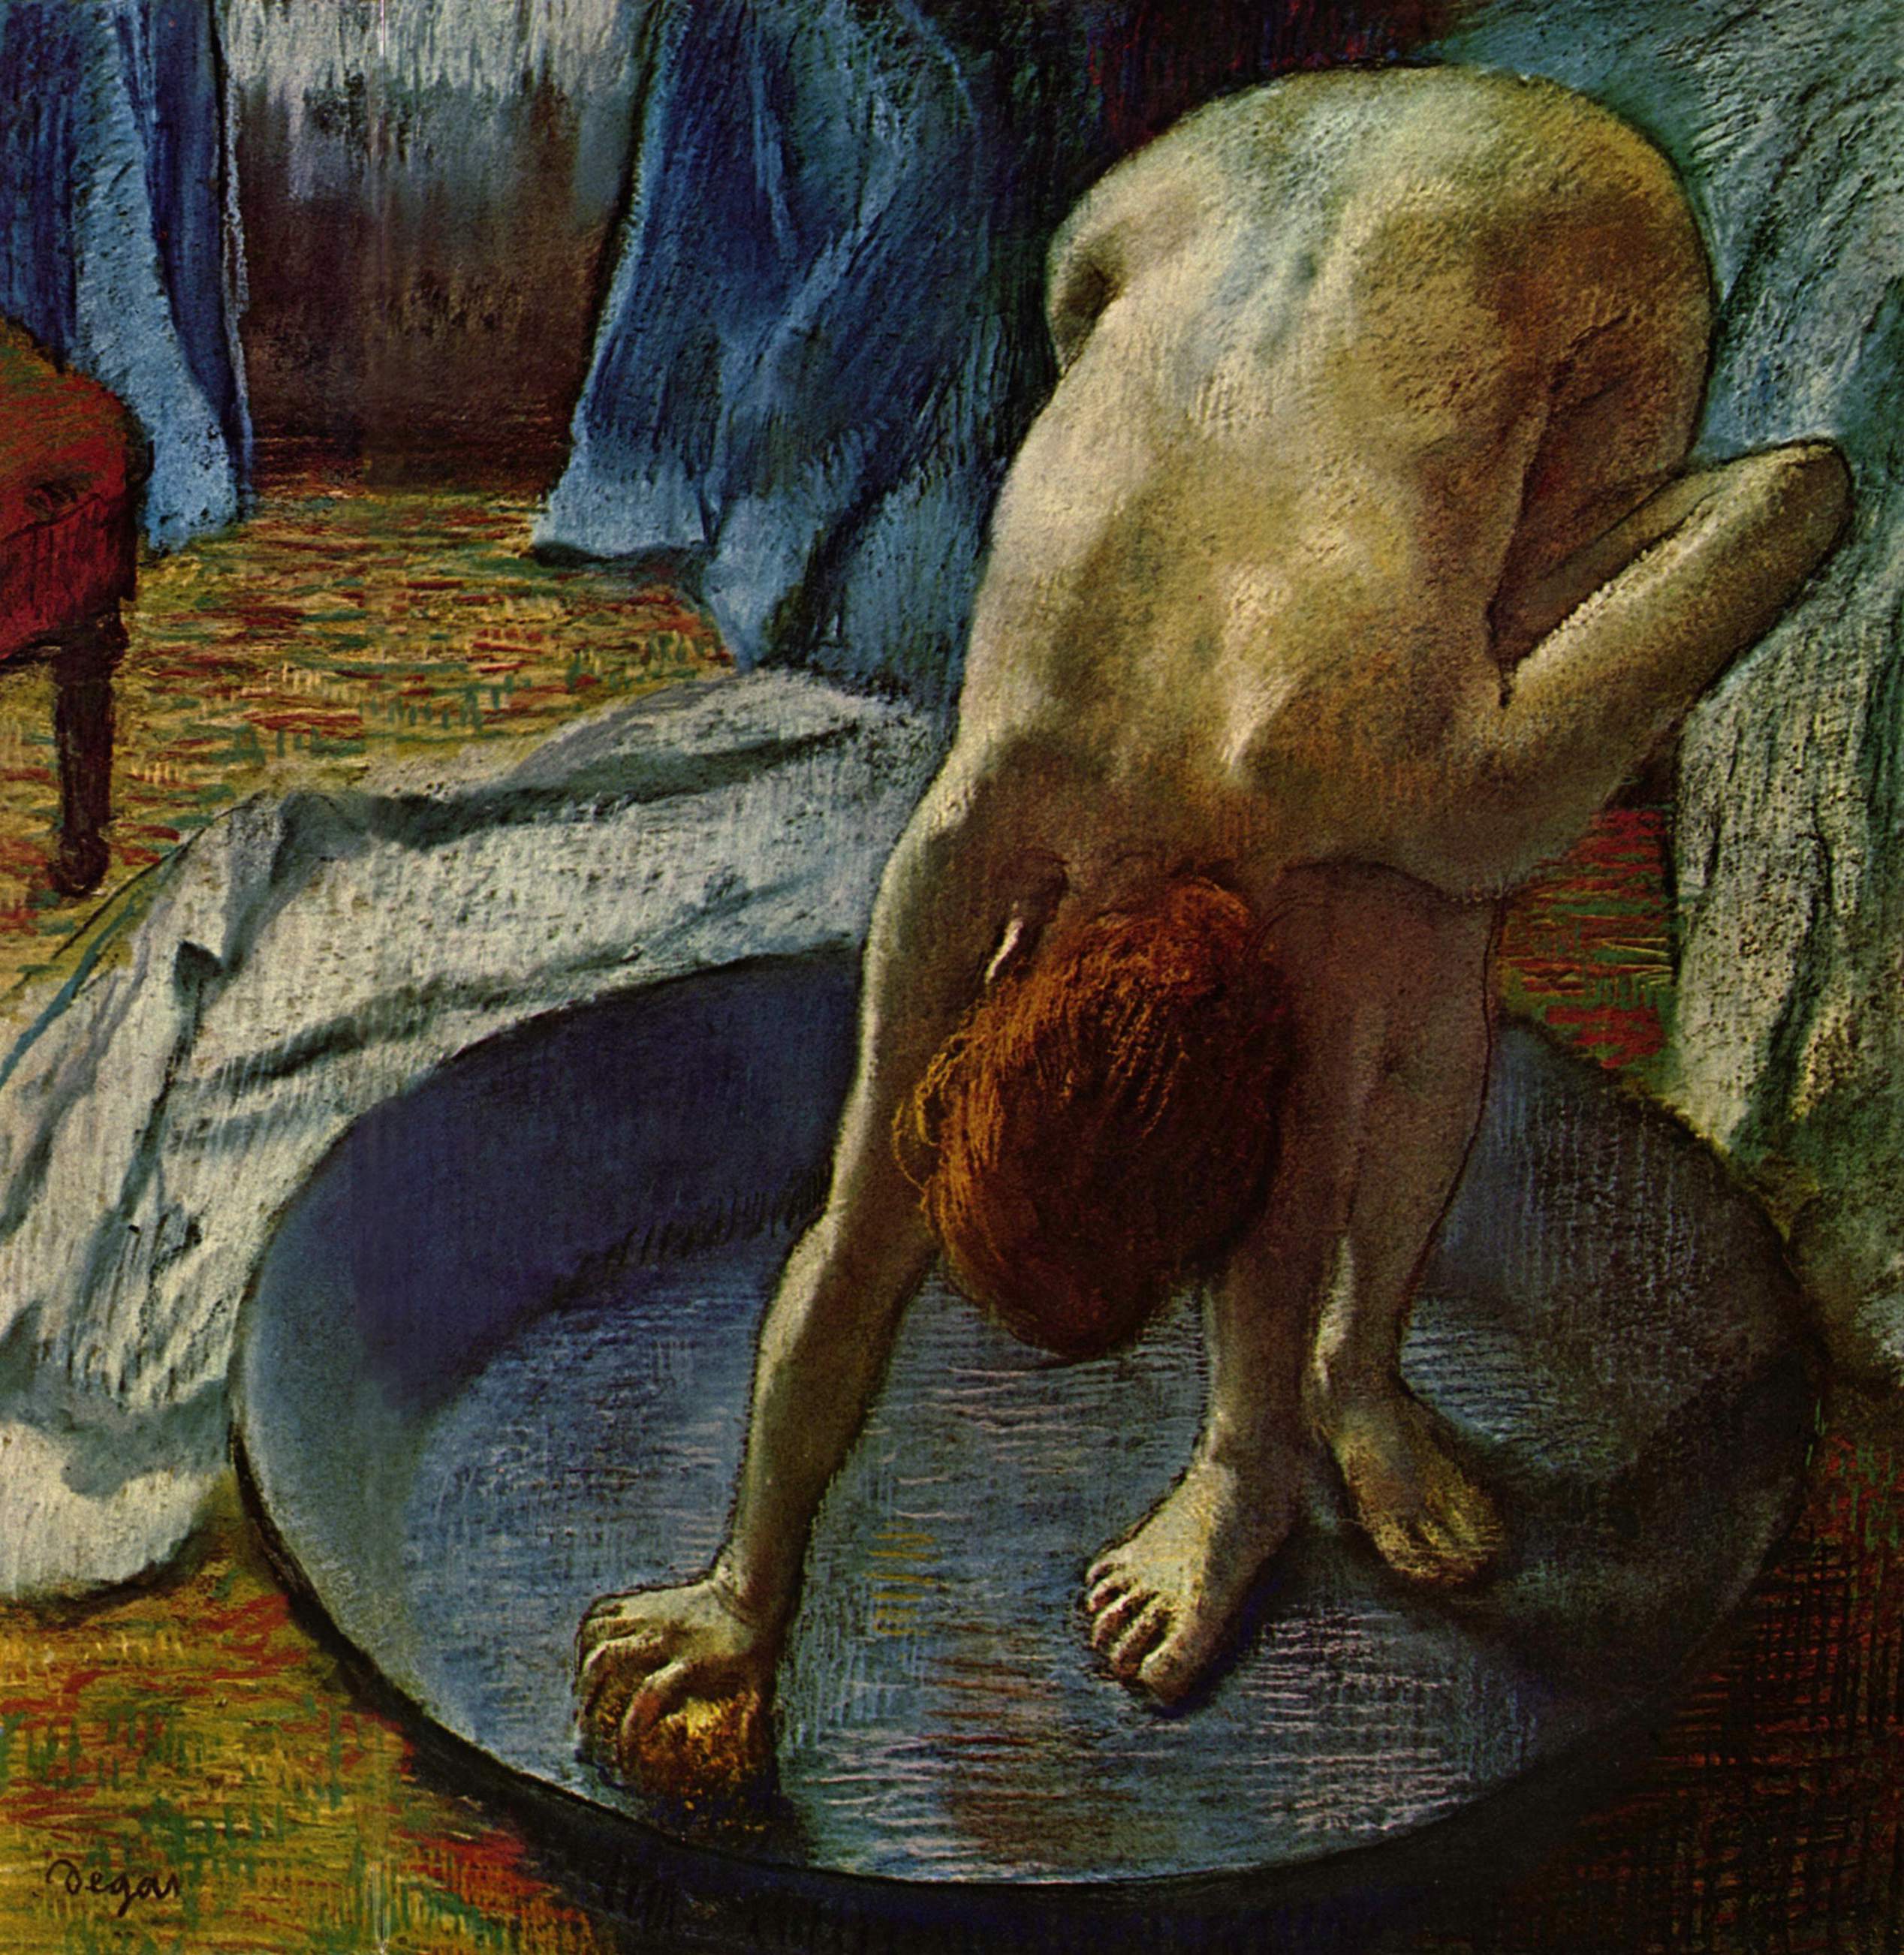 洗澡的女人 by 埃德加 德加 - 1886 - 69.9 x 69.9 cm 希尔-斯泰德博物馆